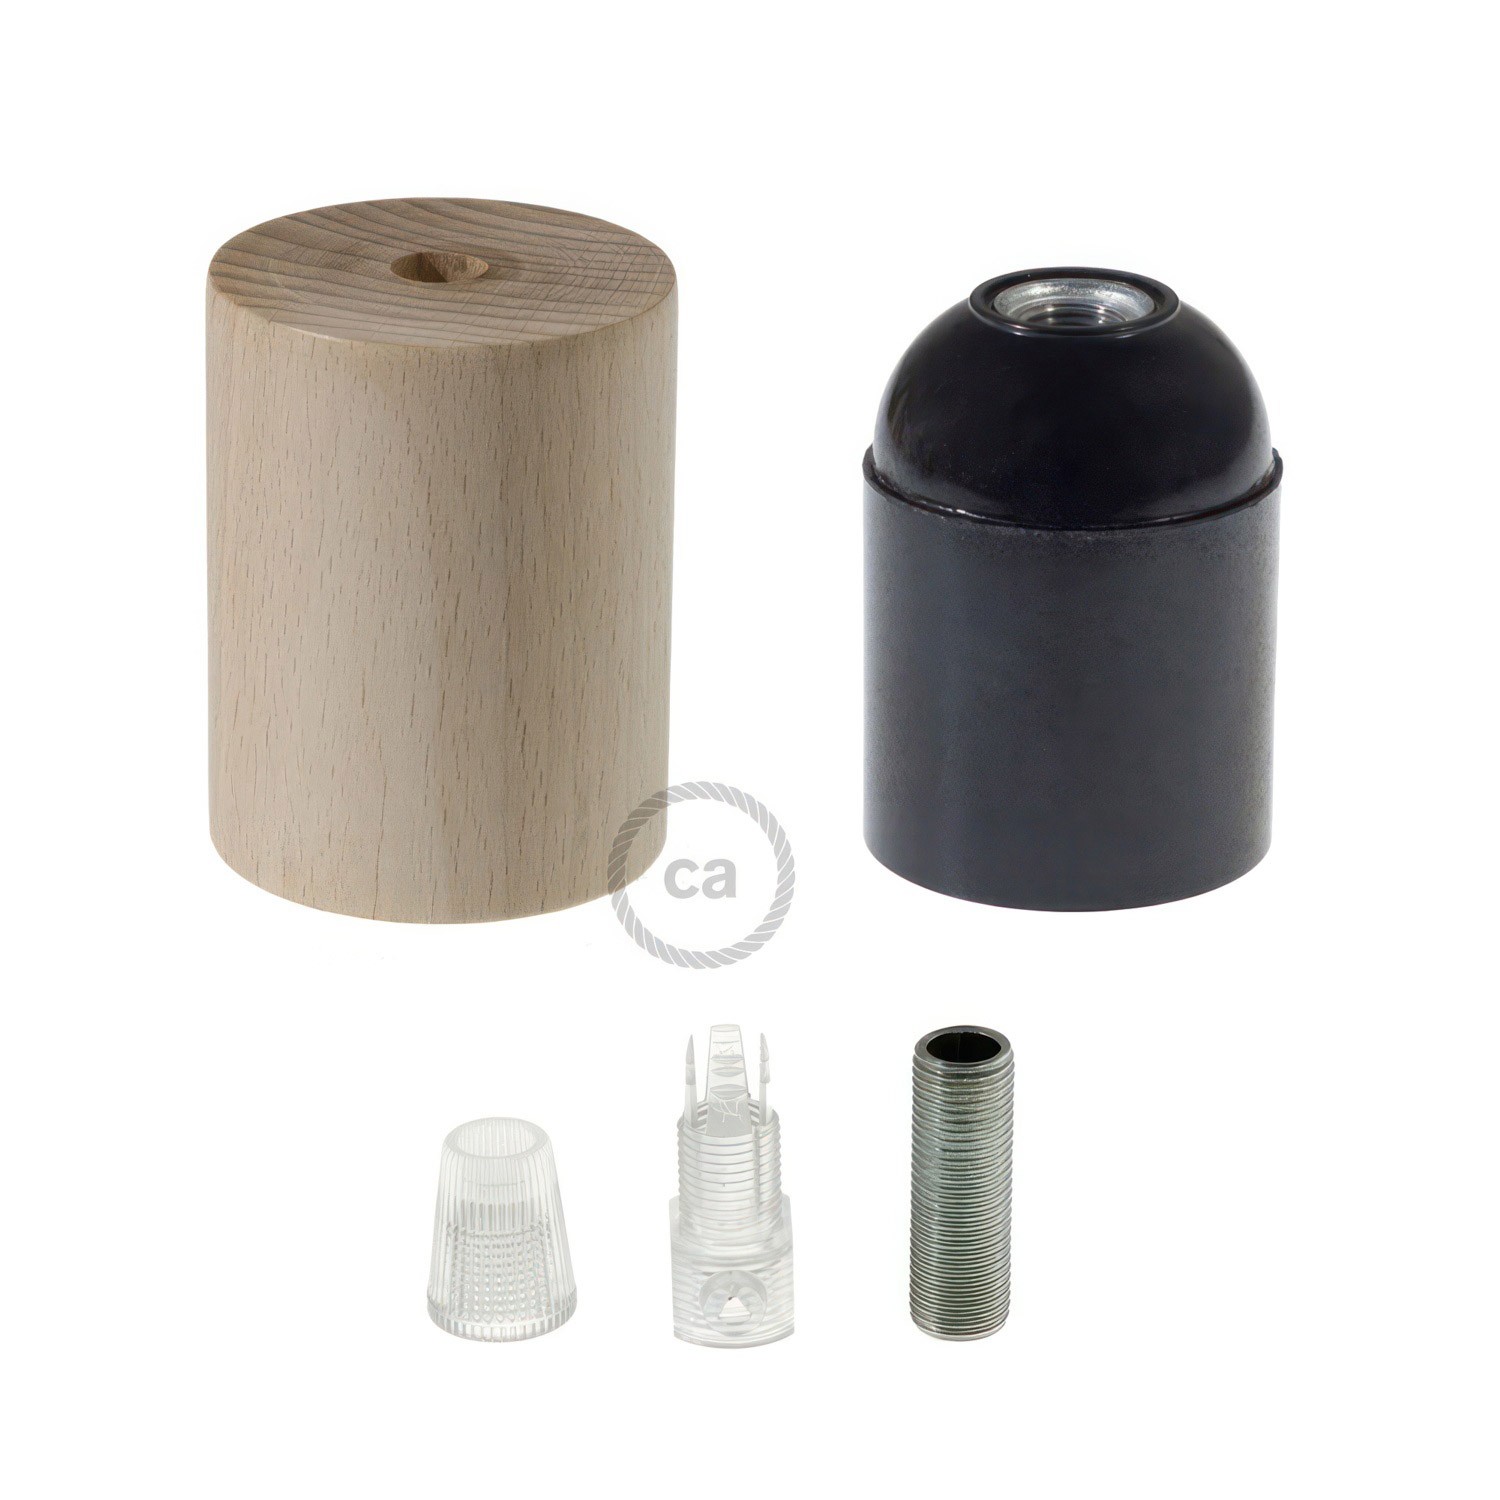 Wooden E27 lamp holder kit